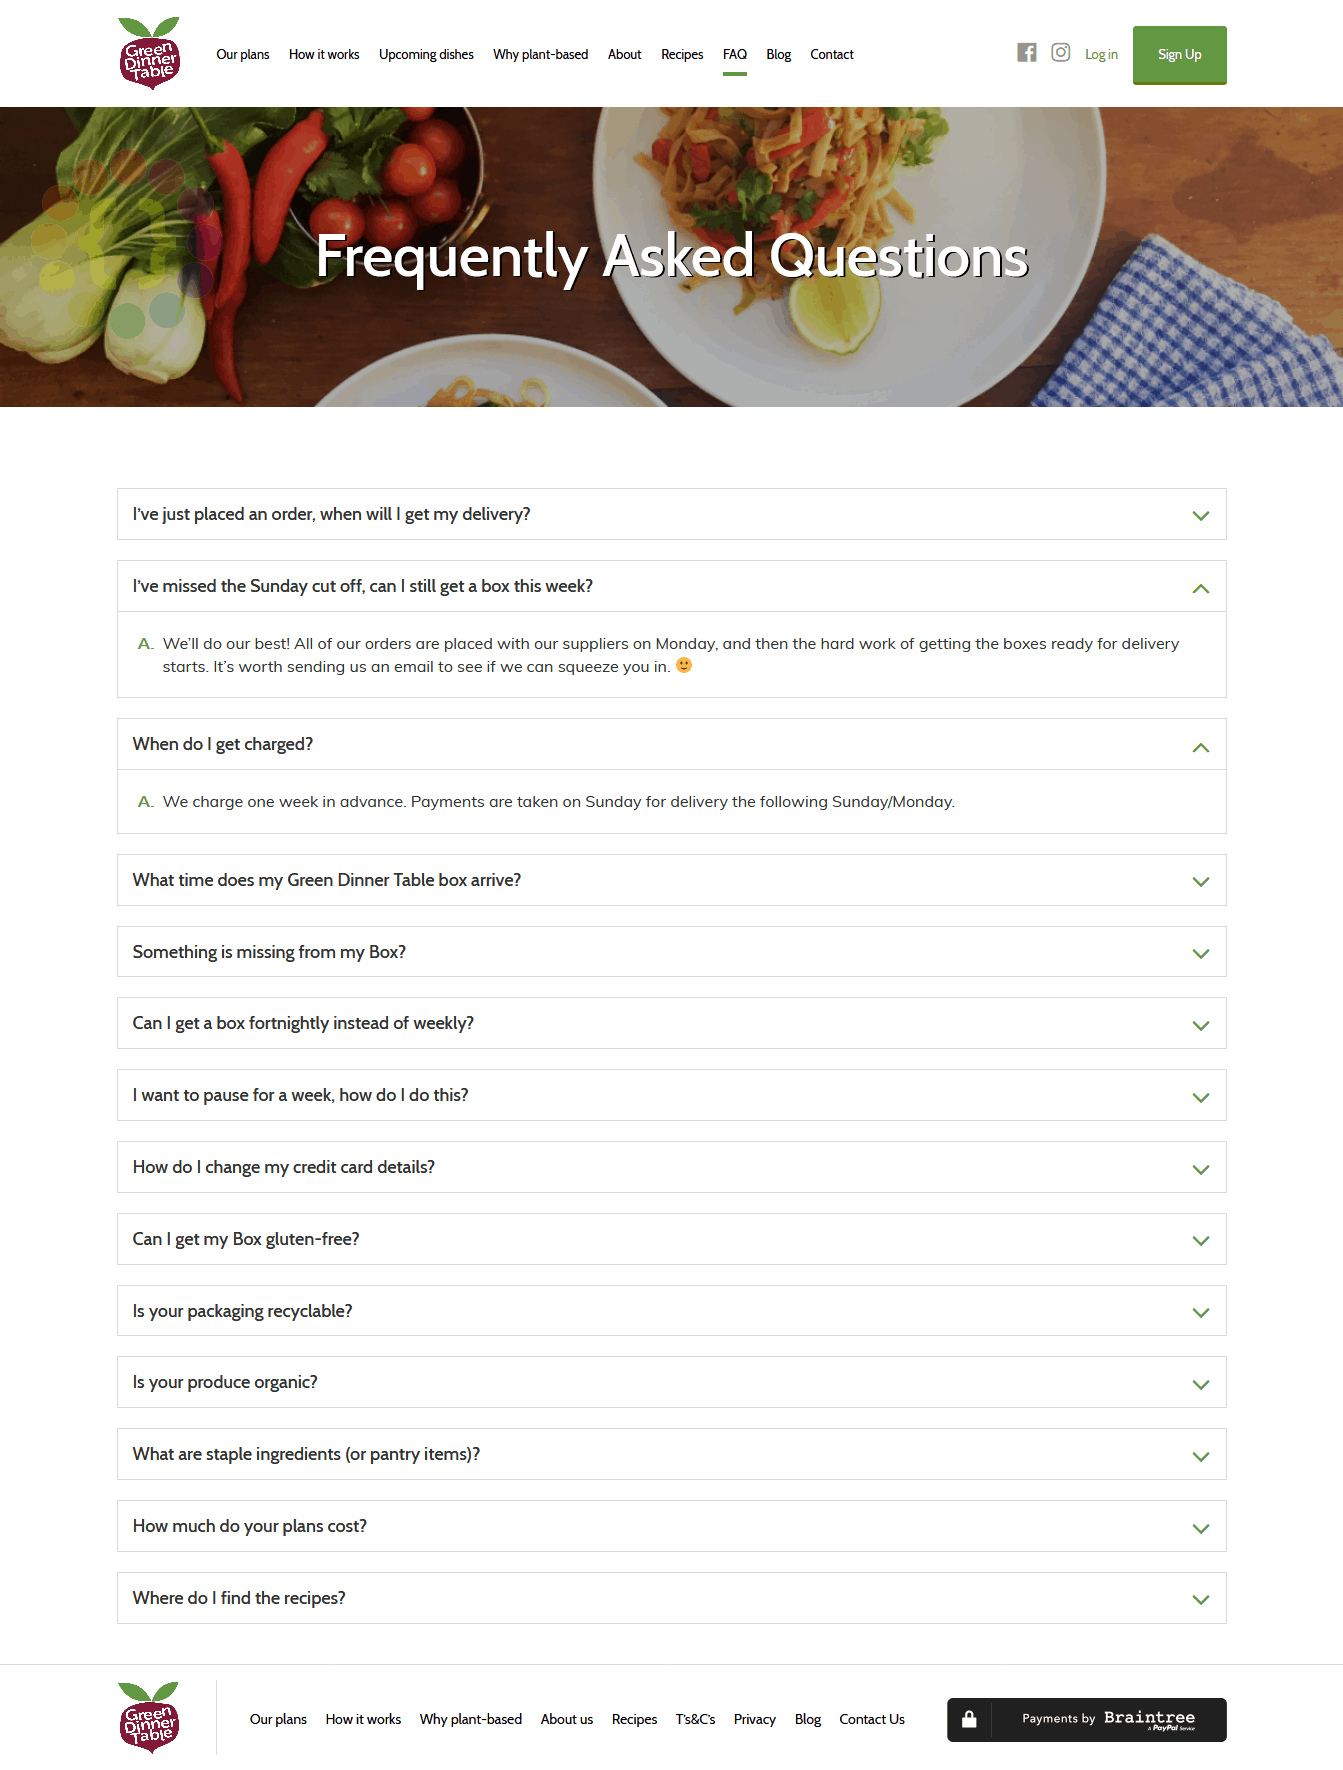 Trang FAQ dạng xếp lớp của Green Dinner Table